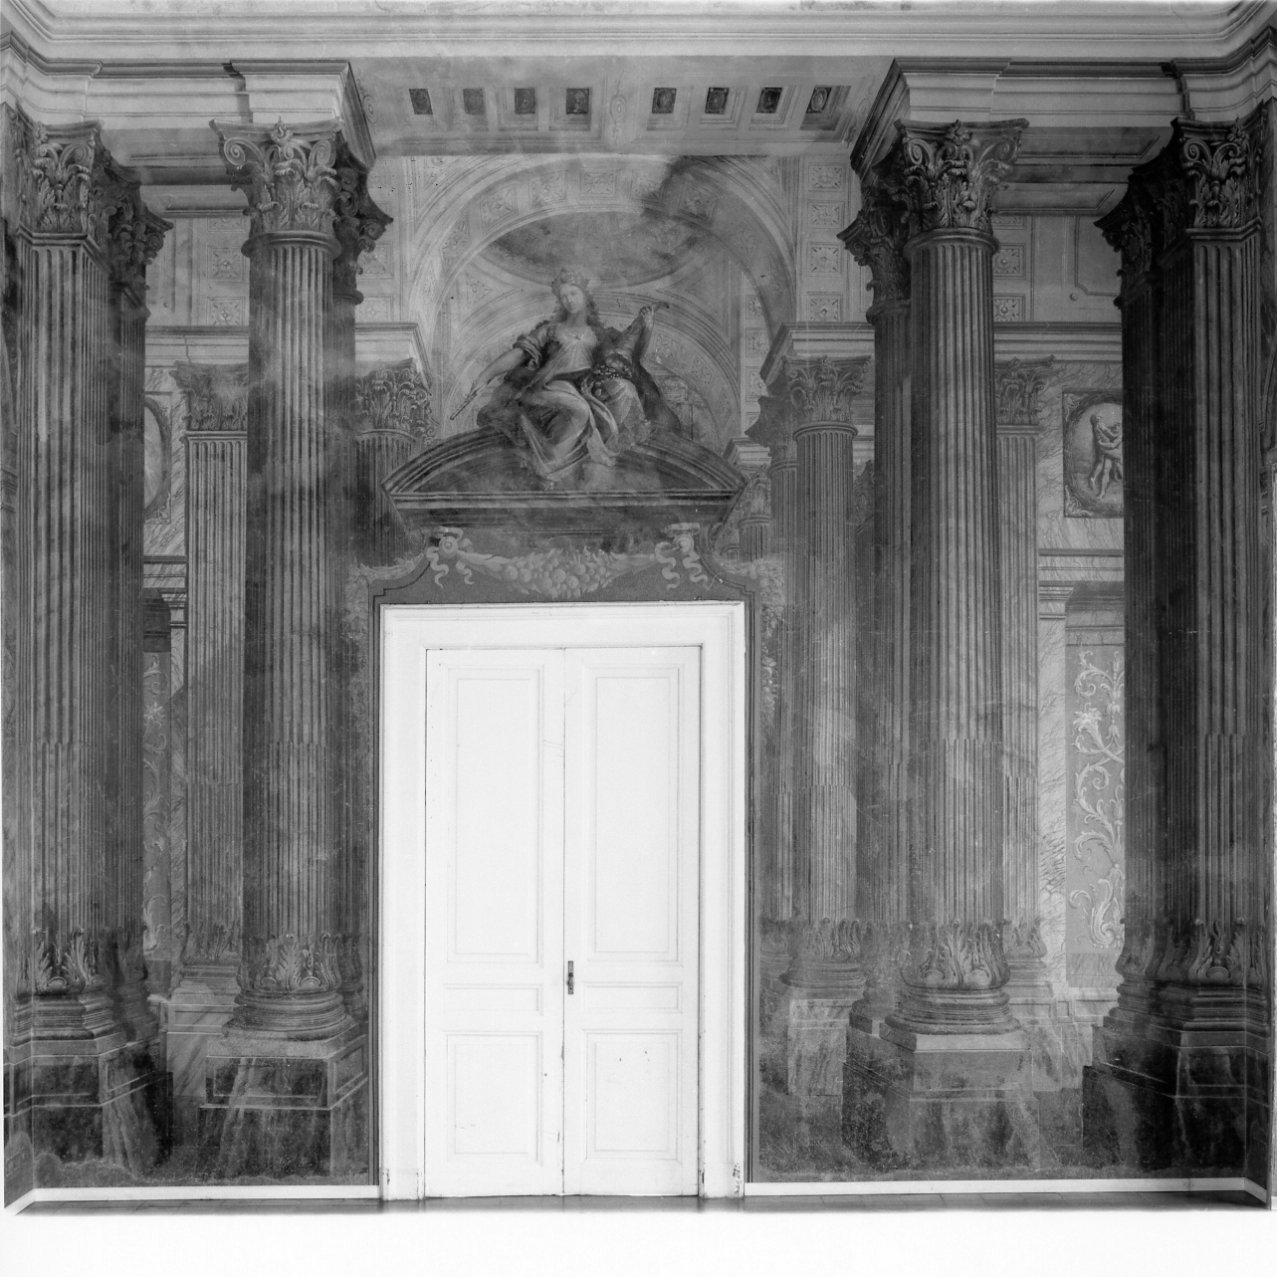 architettura illusionistica (decorazione pittorica) di Fischetti Fedele (e aiuti) (terzo quarto sec. XVIII)